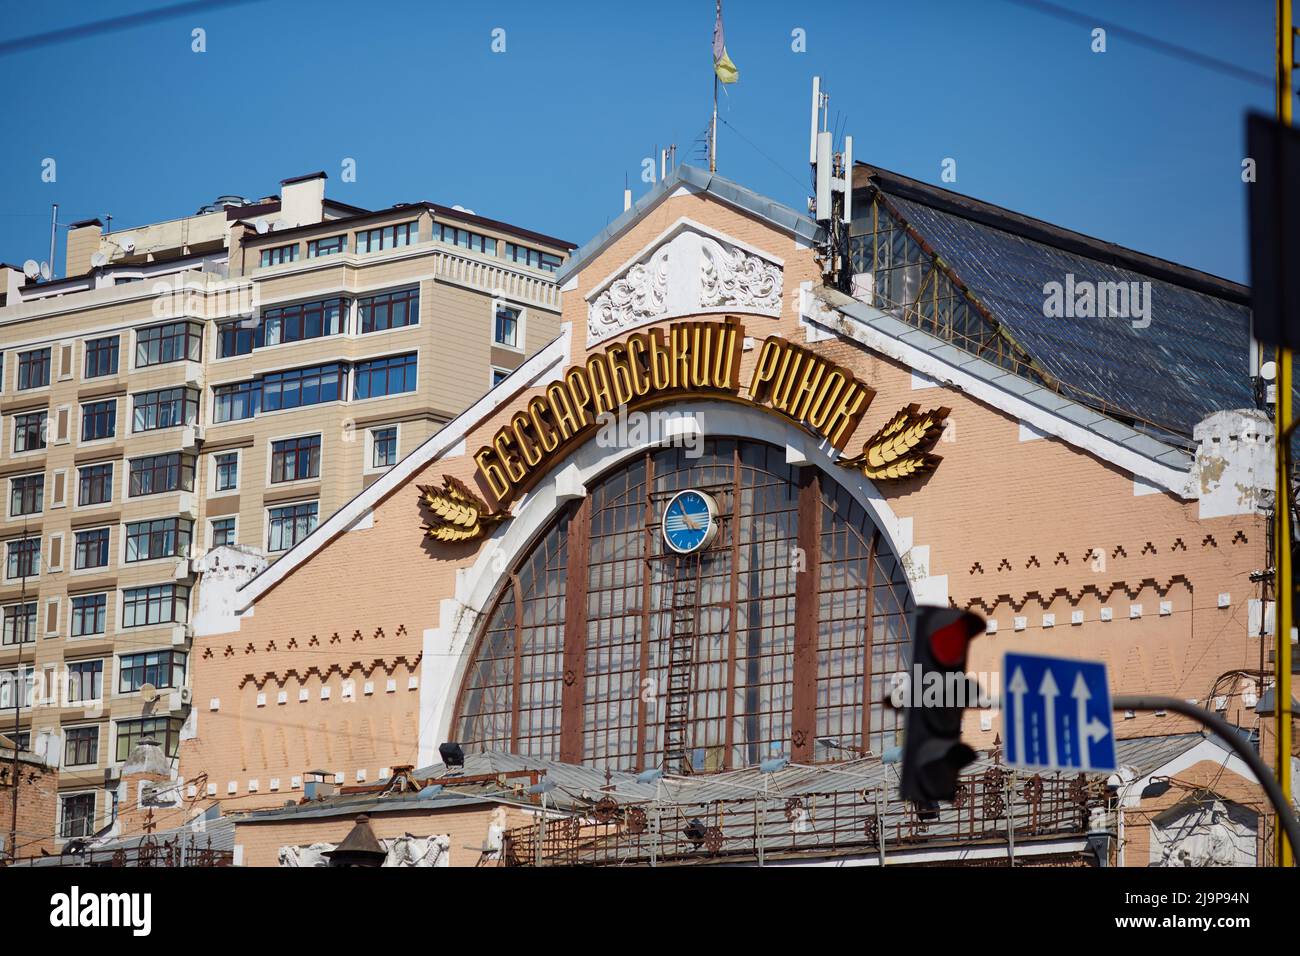 KIEW, UKRAINE - 27. Sep 2019: Die Straßen von Kiew. Alte und neue Architektur von Kiew Stockfoto